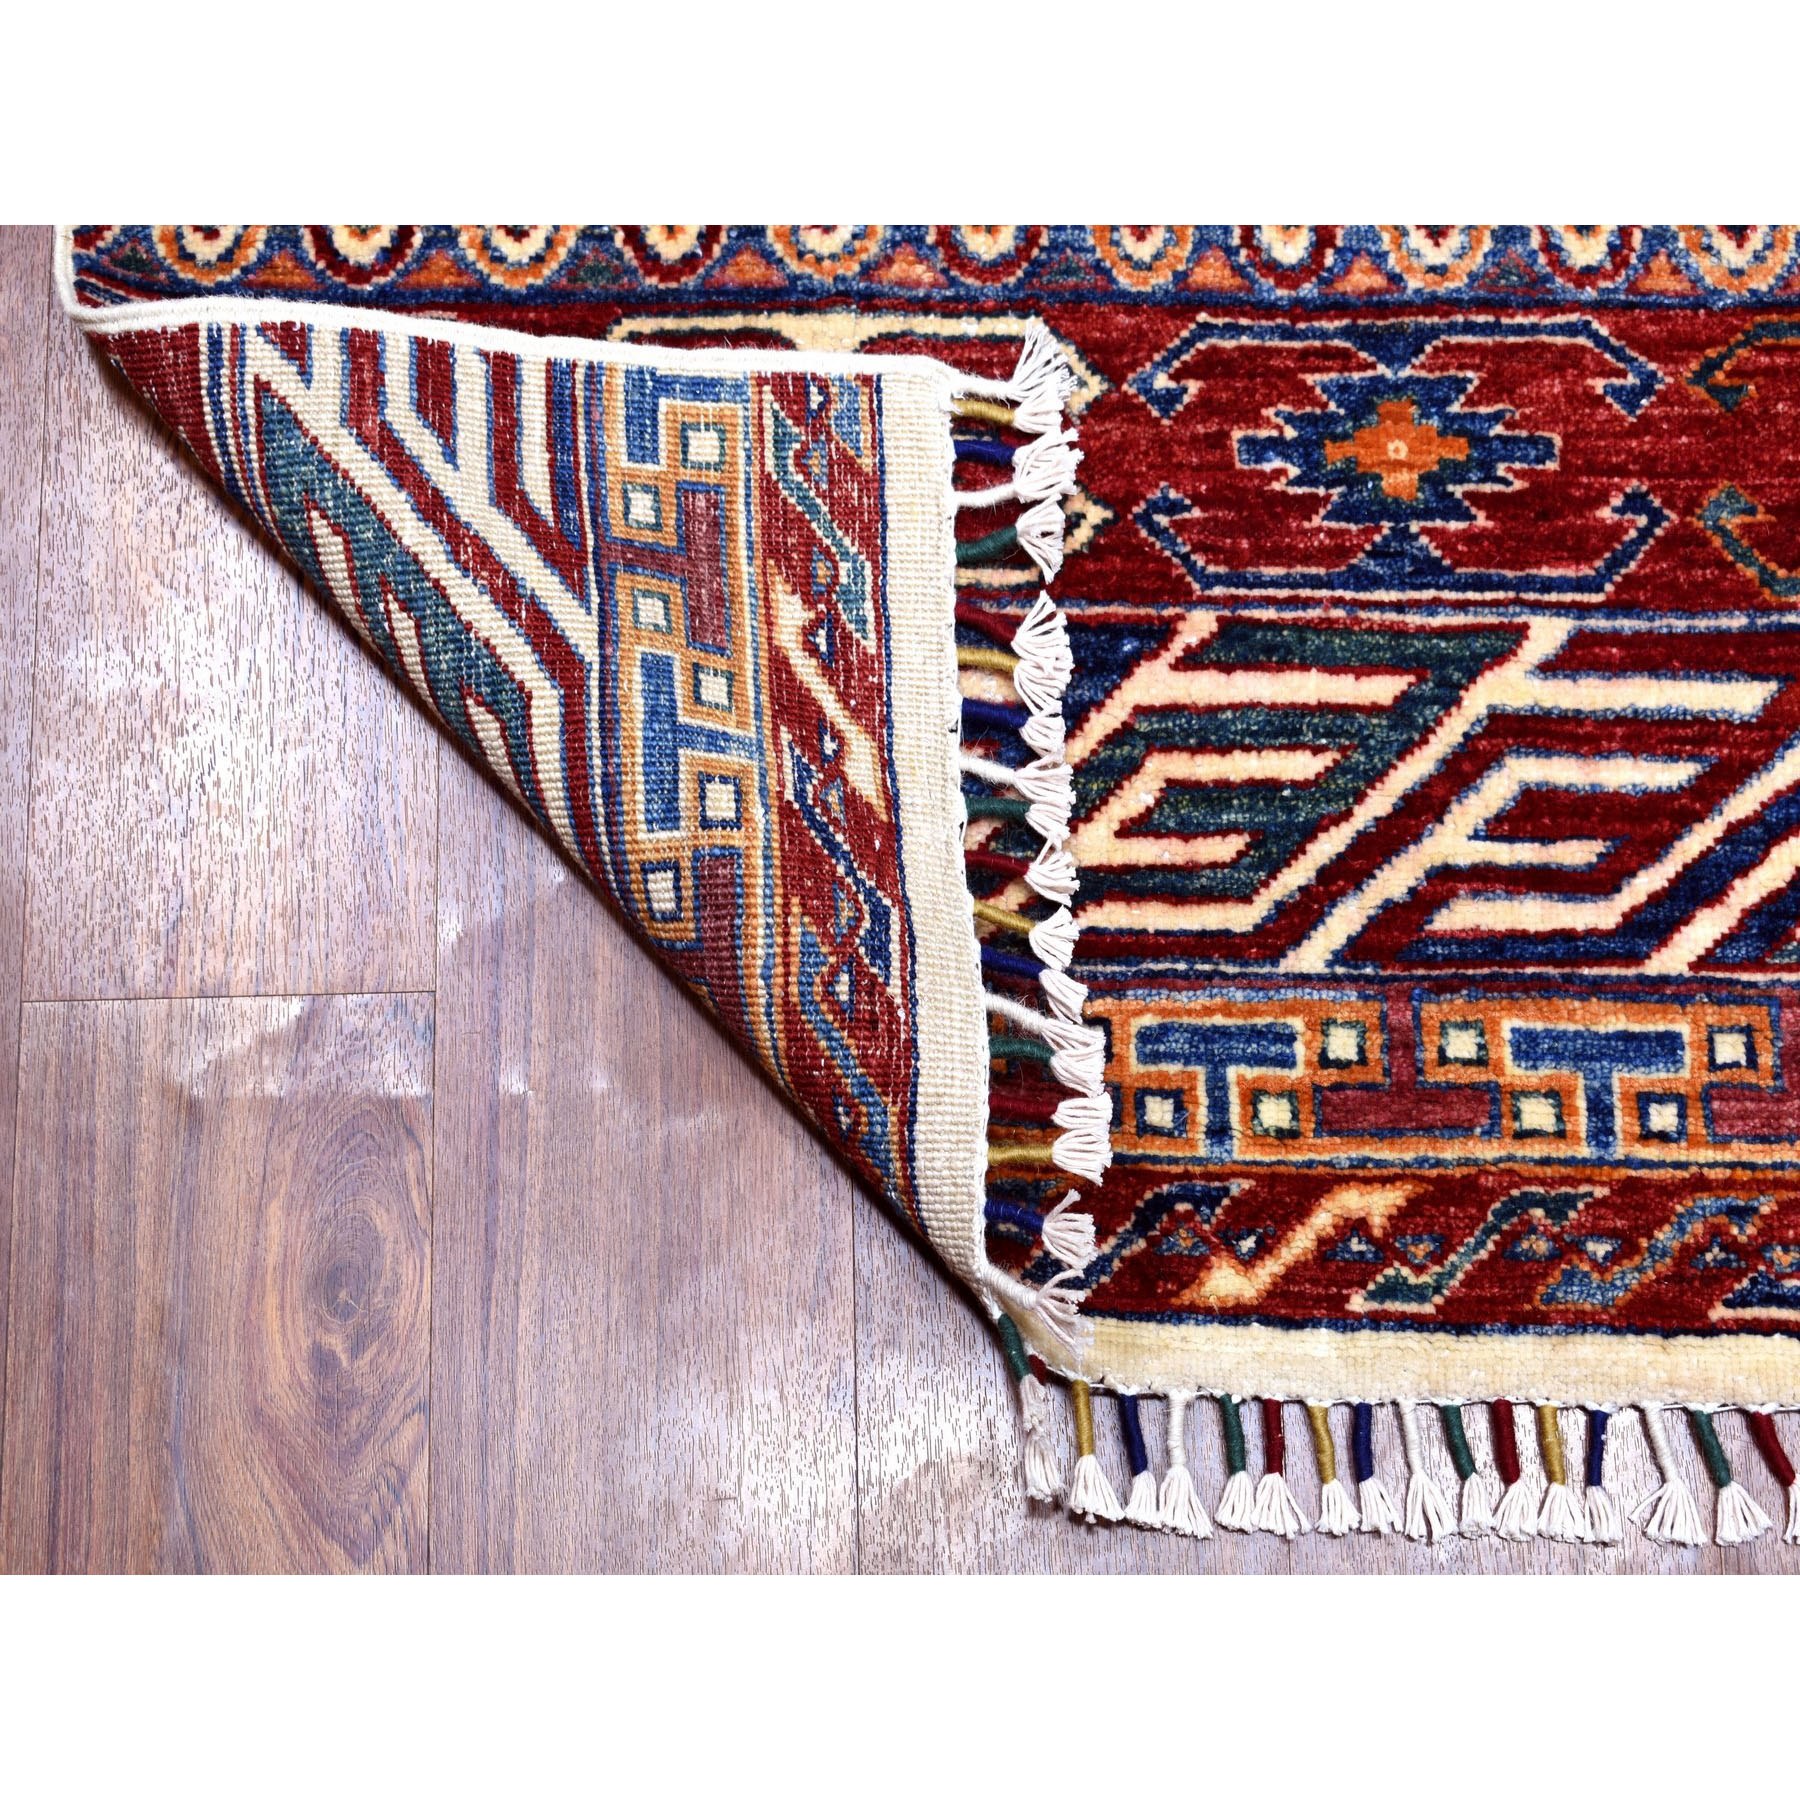 2'4"x9'1" Khorjin Design Runner Blue Super Kazak Tribal Pure Wool Hand Woven Oriental Rug 